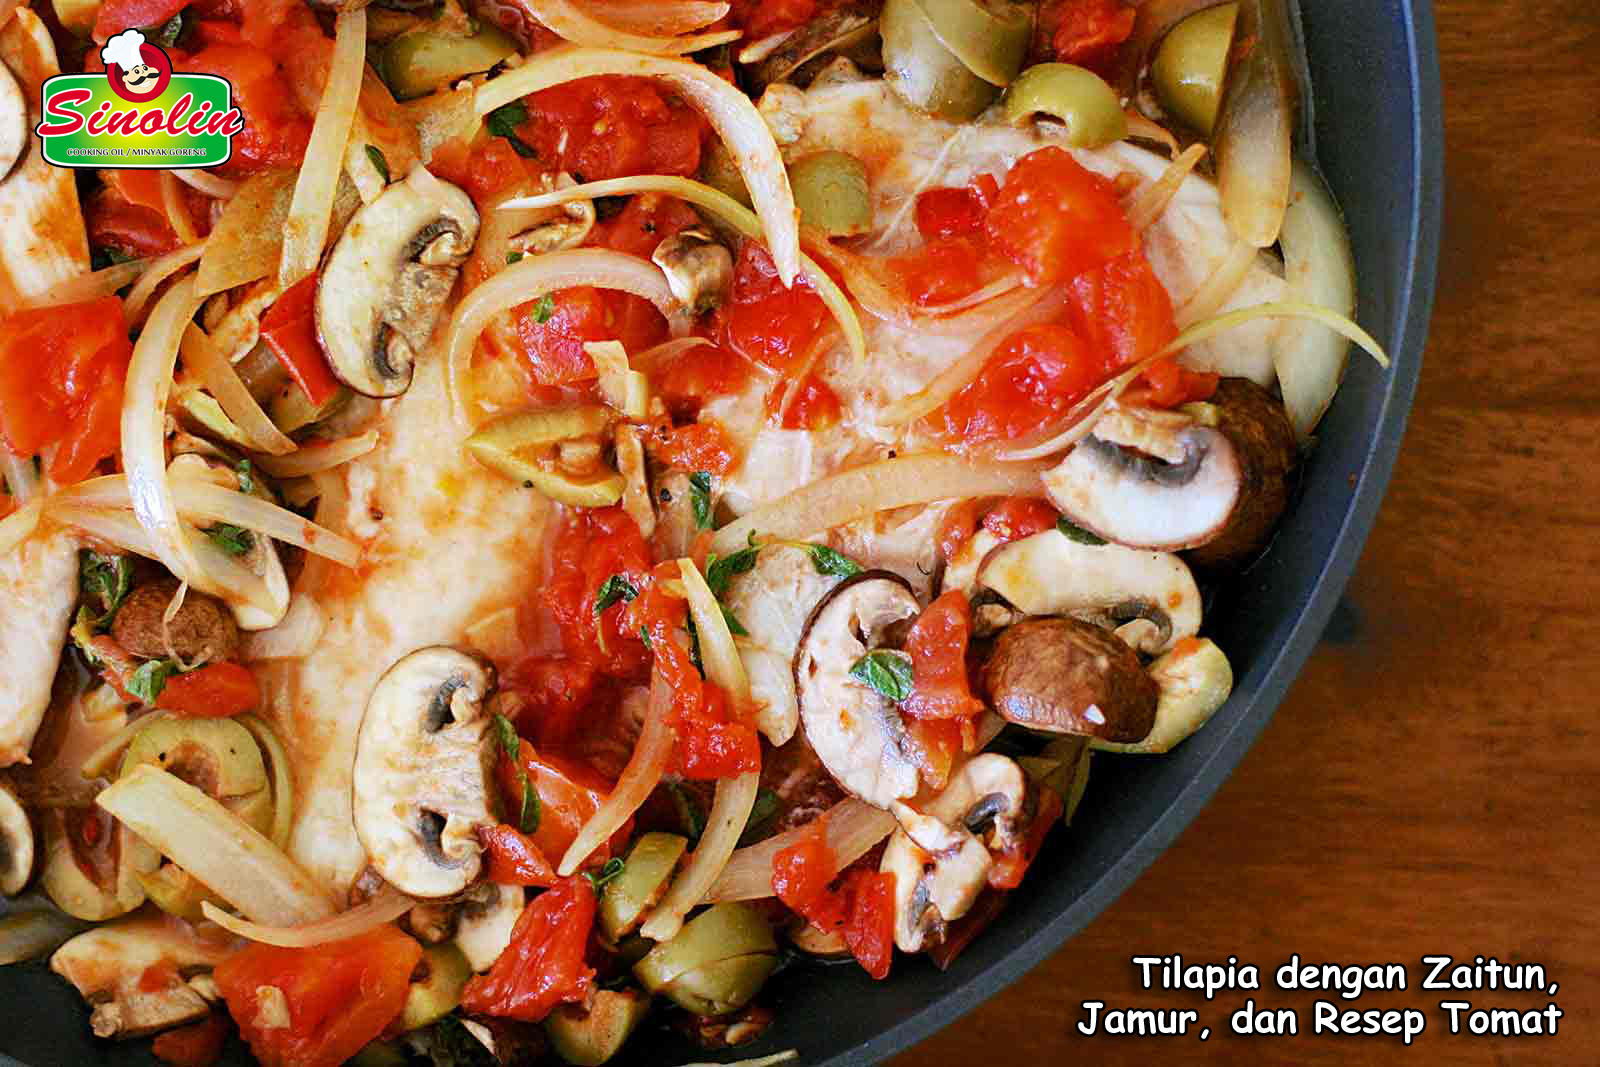 Tilapia dengan Zaitun, Jamur, dan Resep Tomat Oleh Dapur Sinolin